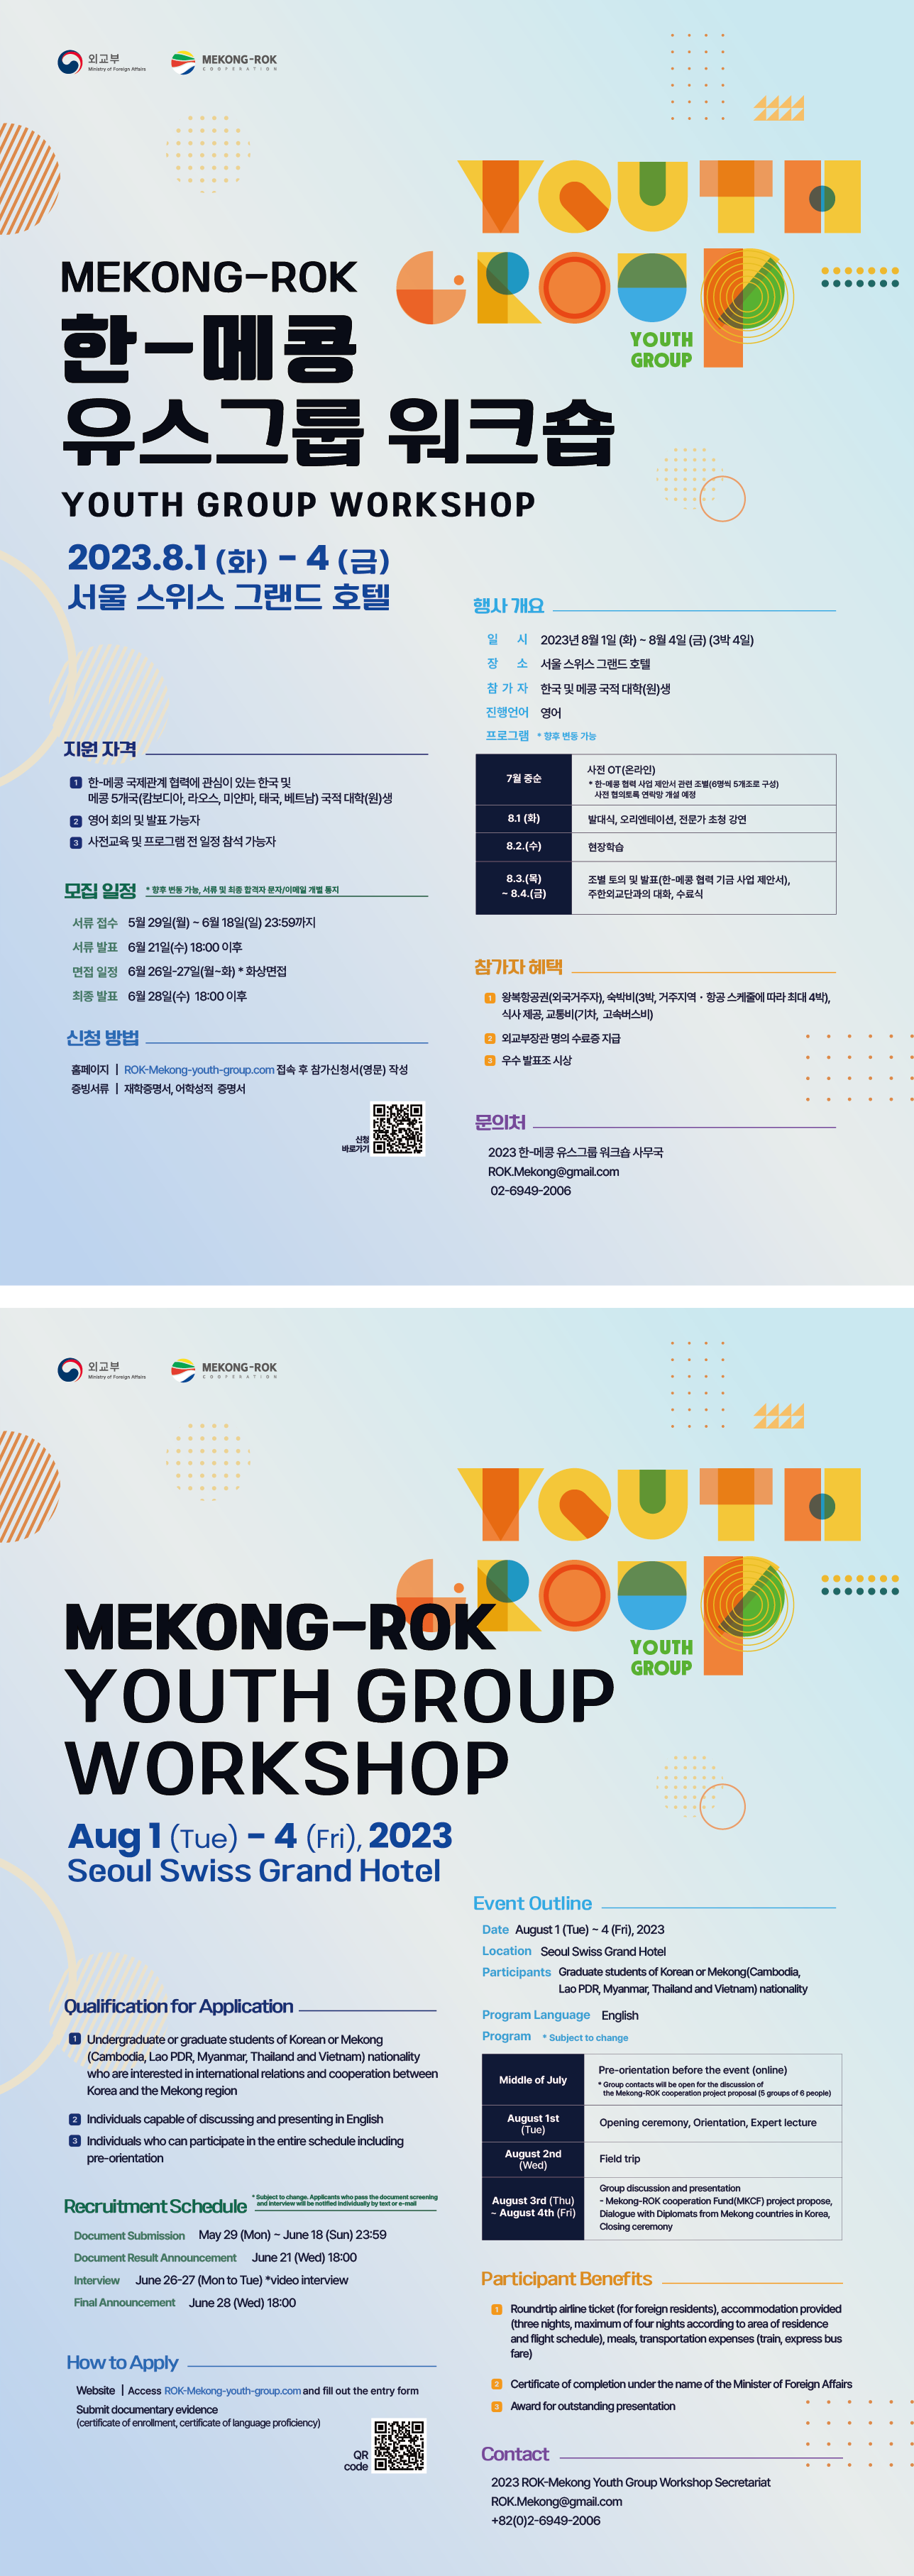 「한-메콩 유스그룹(Youth Group) 워크숍」참가자 모집 국영문 포스터